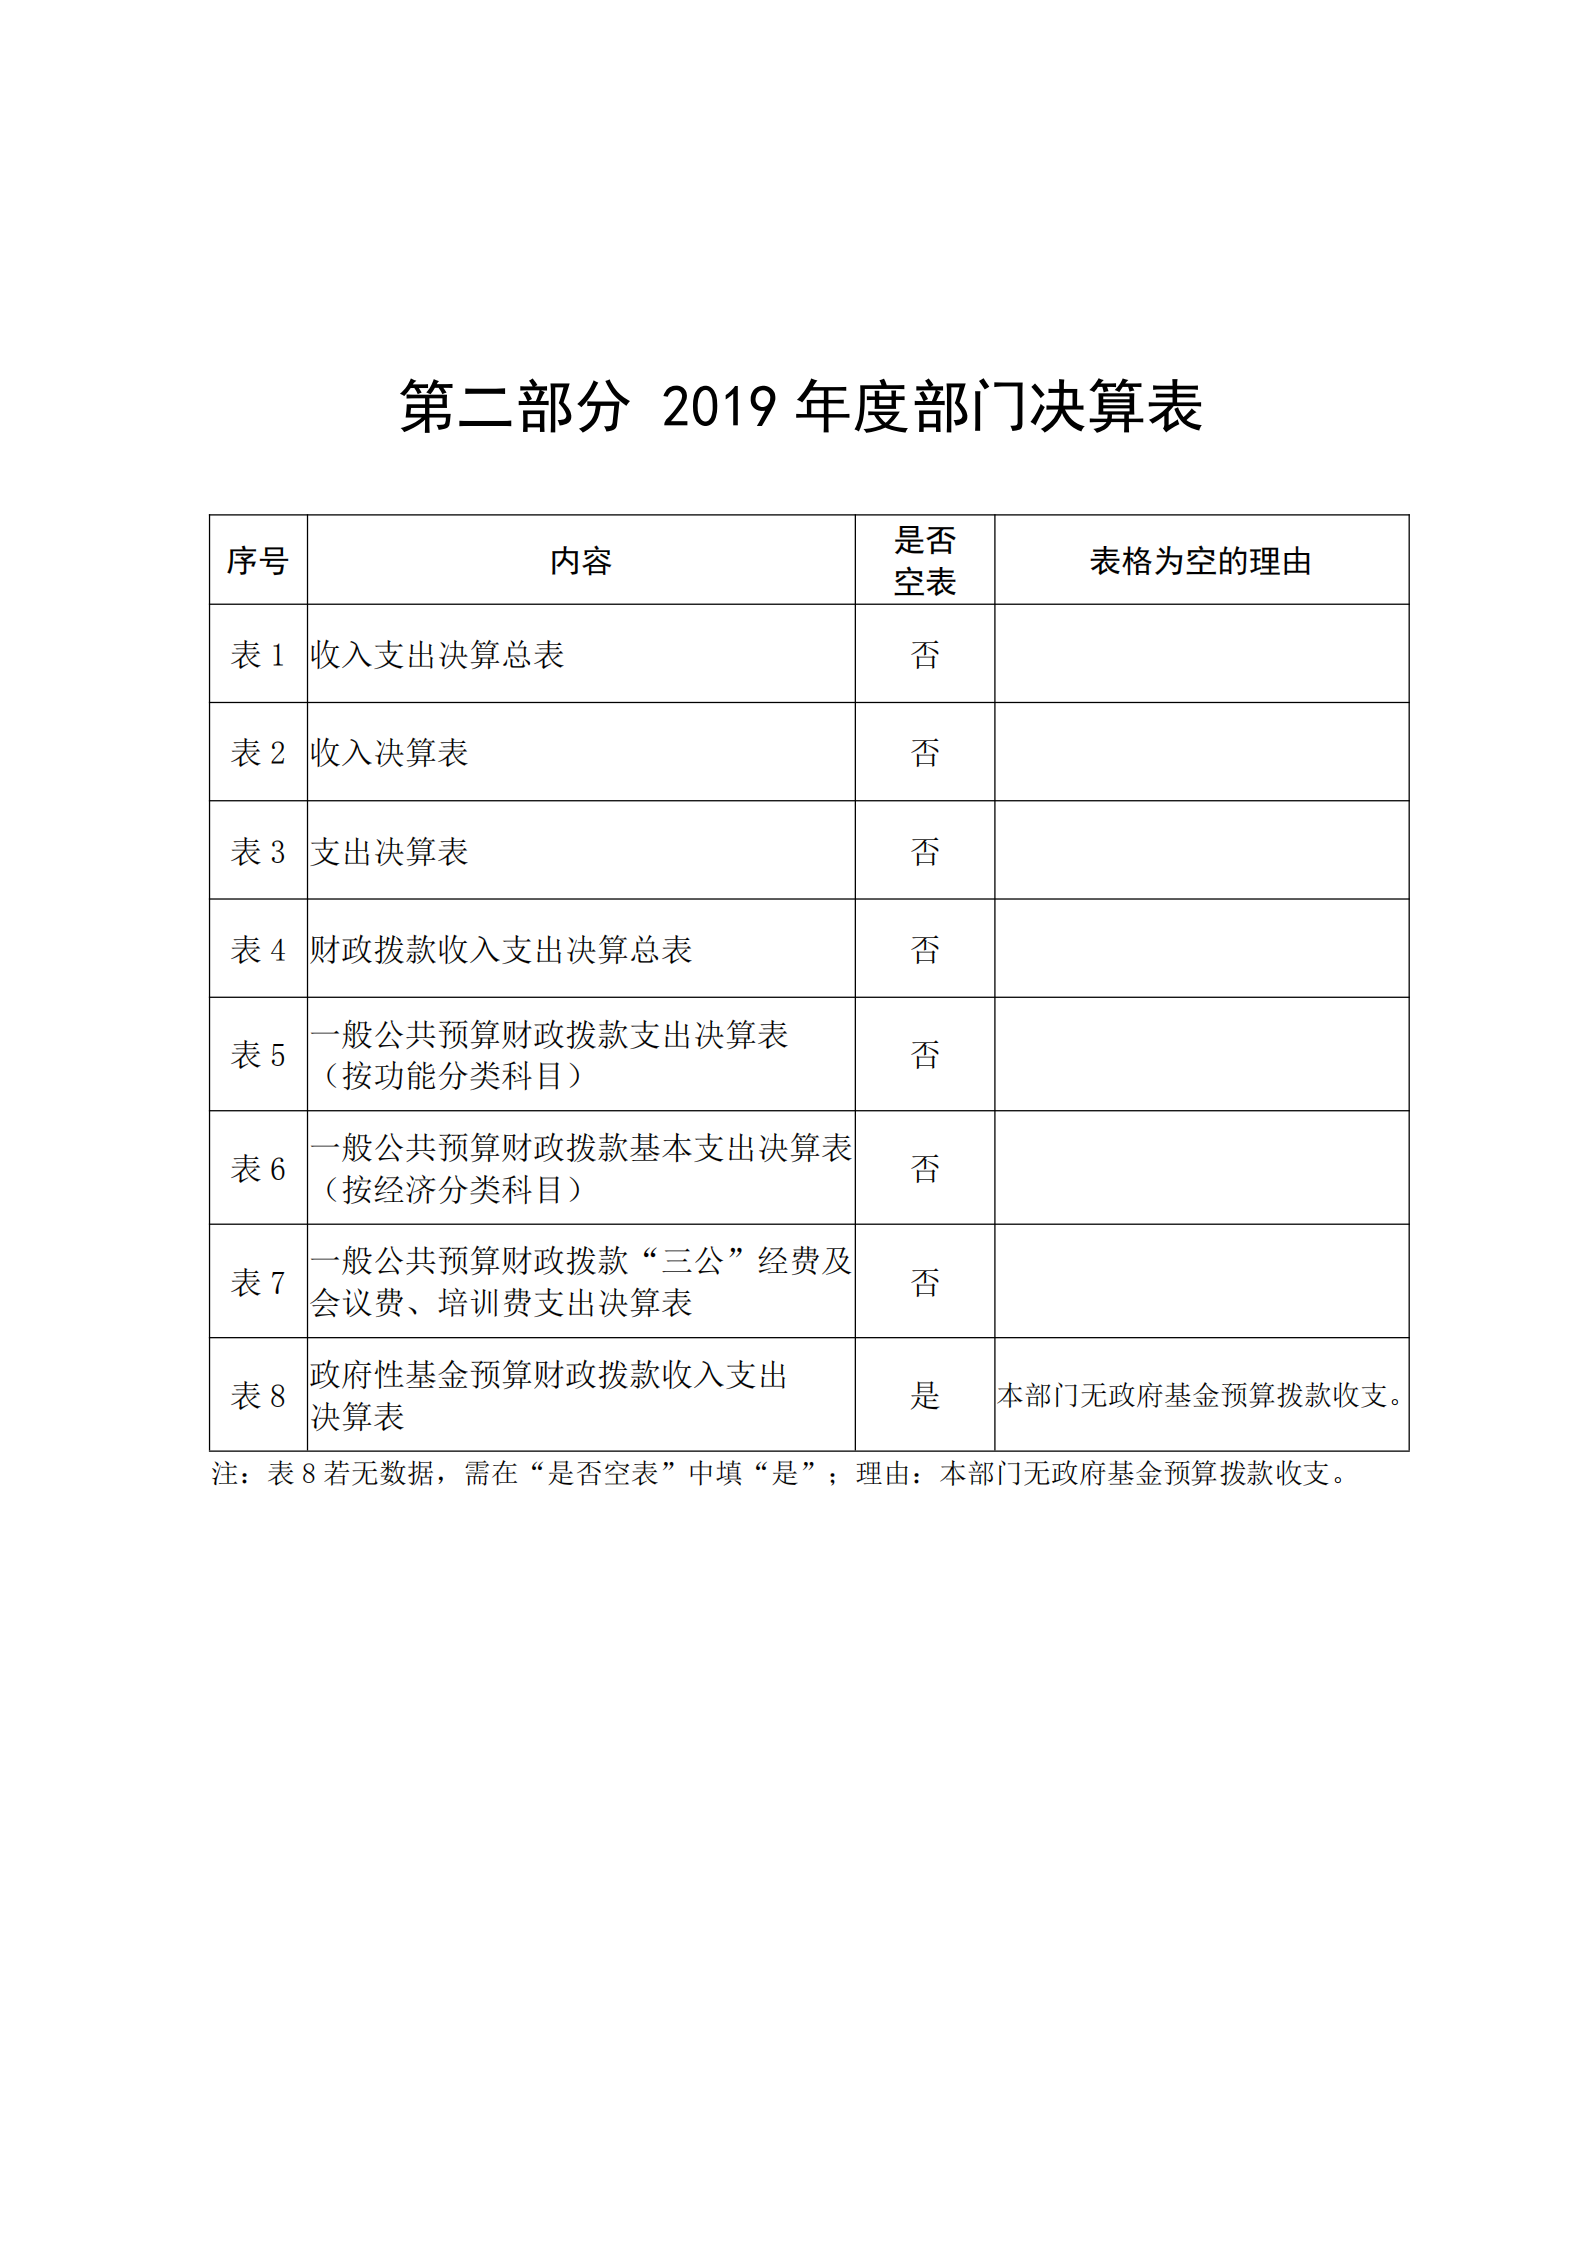 中共延安市委党史研究室2019年部门决算(图6)